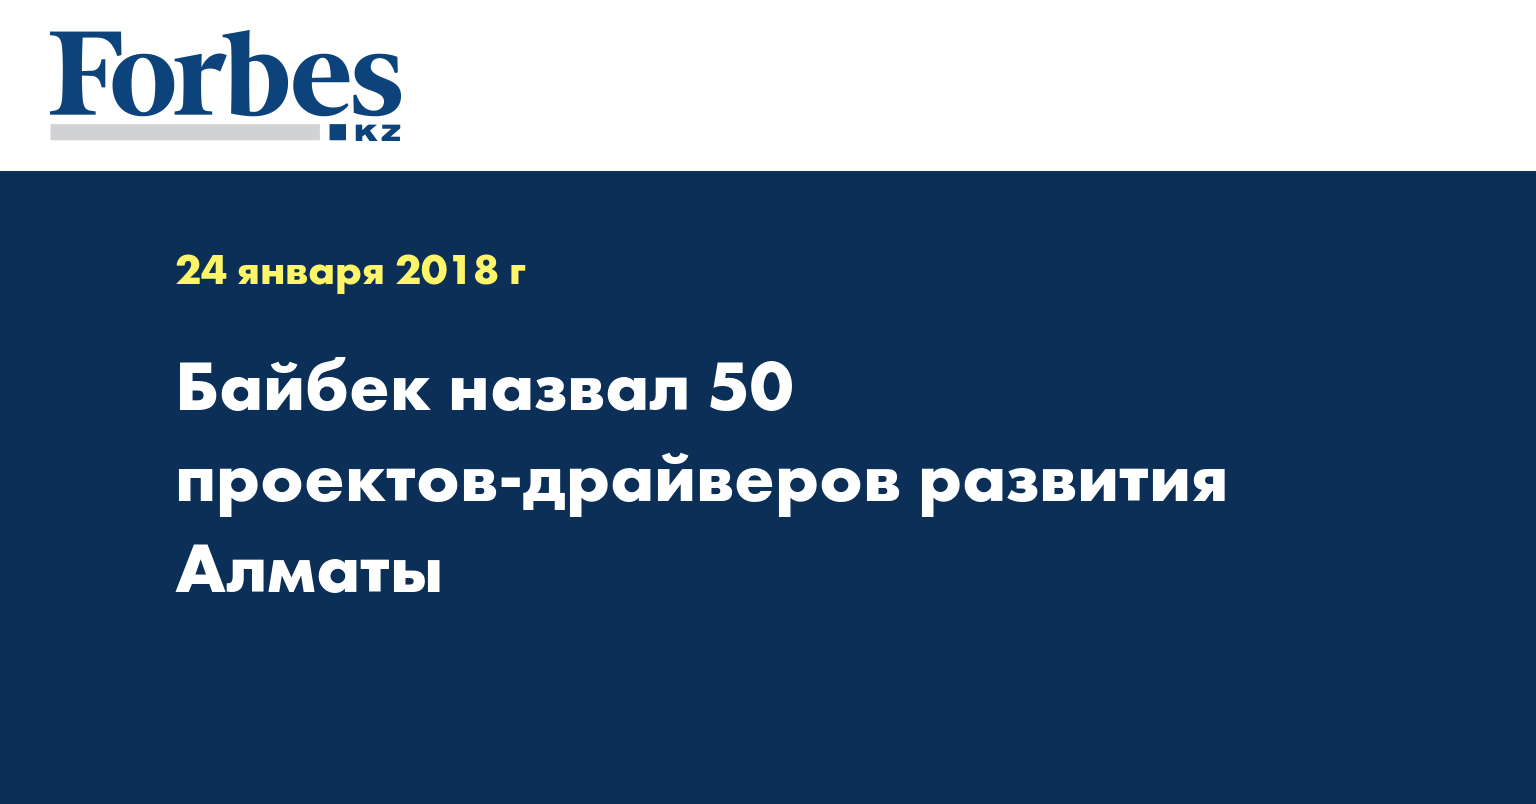 Байбек назвал 50 проектов - драйверов развития Алматы